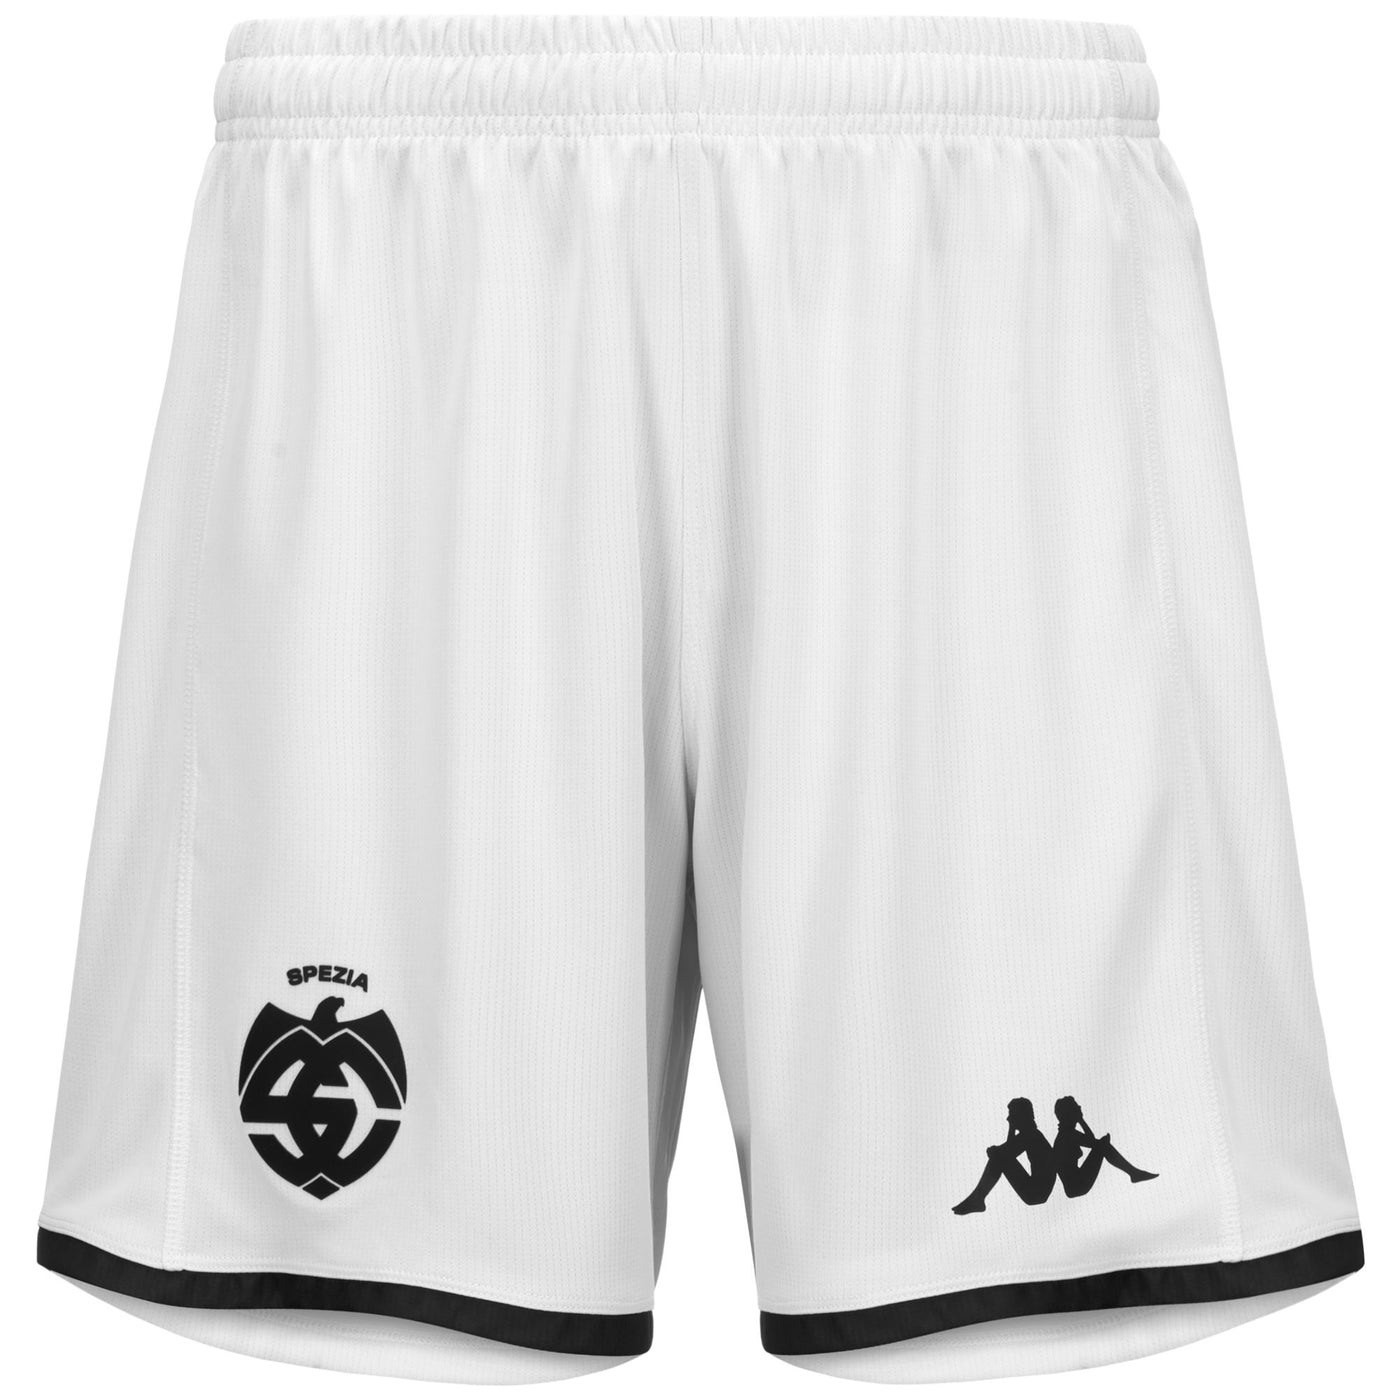 Shorts Man KOMBAT RYDER SPEZIA Sport  Shorts BLACK-WHITE Photo (jpg Rgb)			